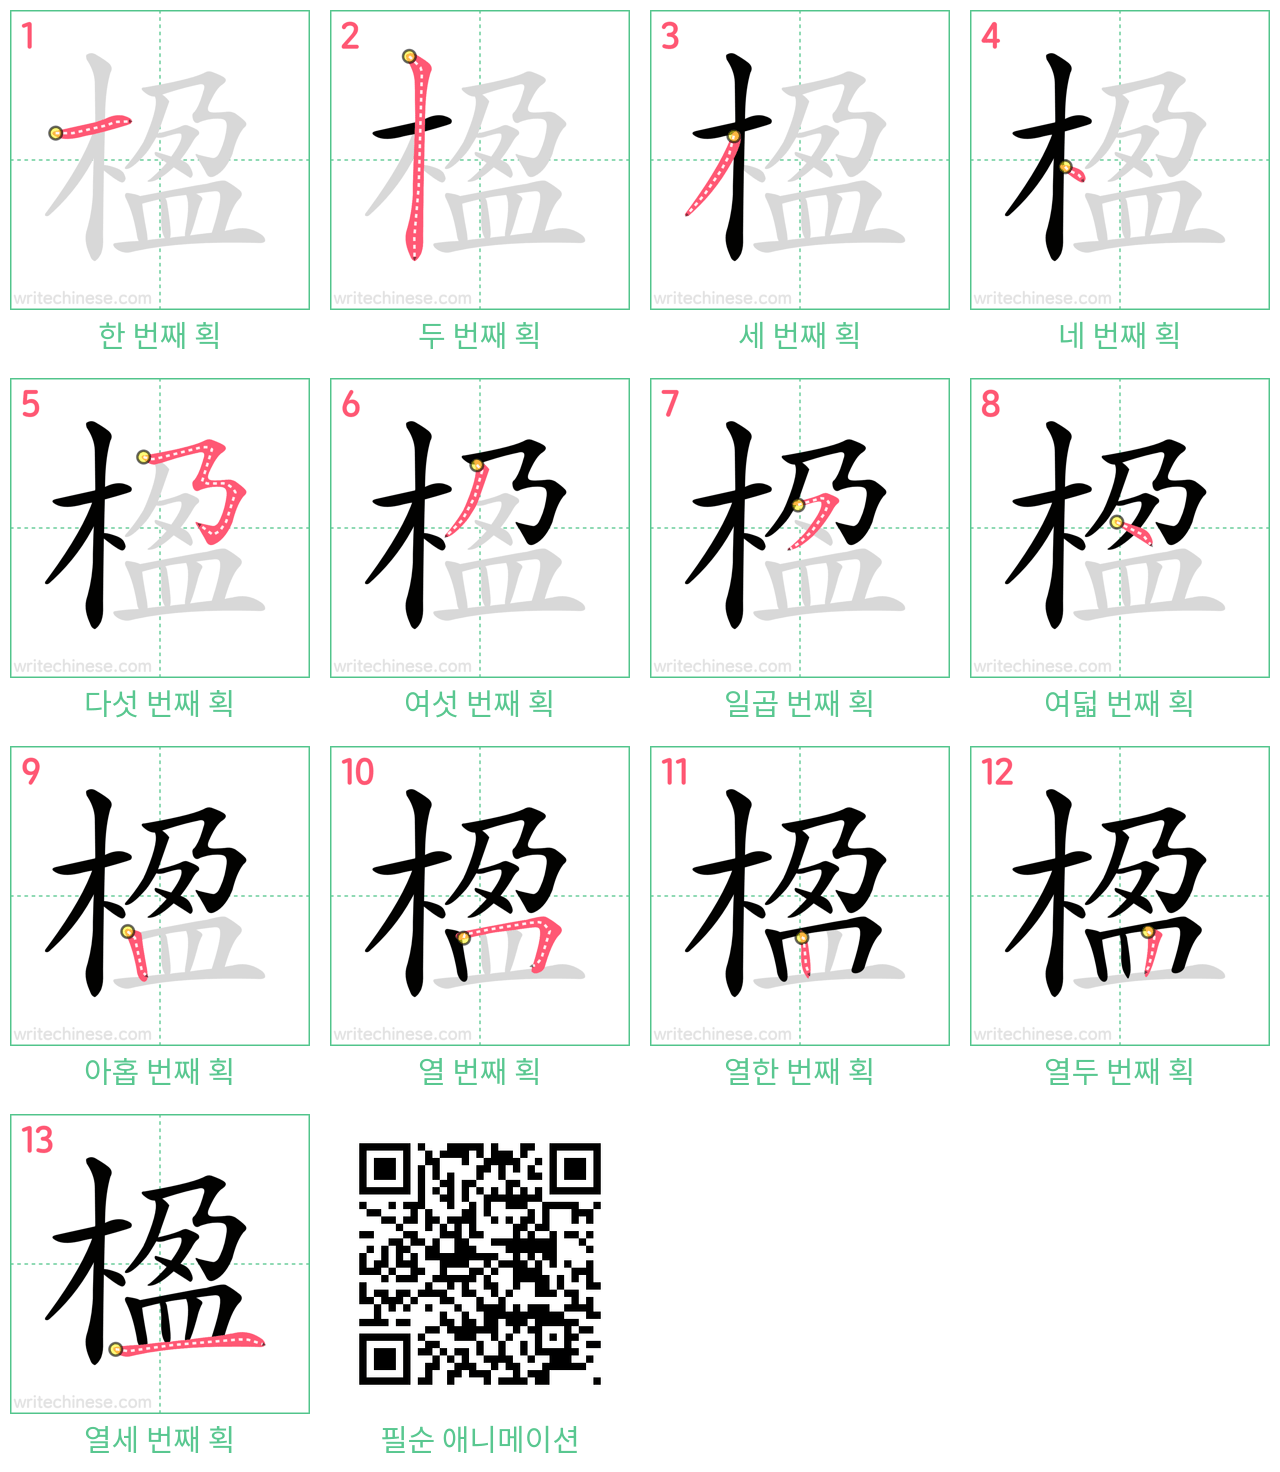 楹 step-by-step stroke order diagrams